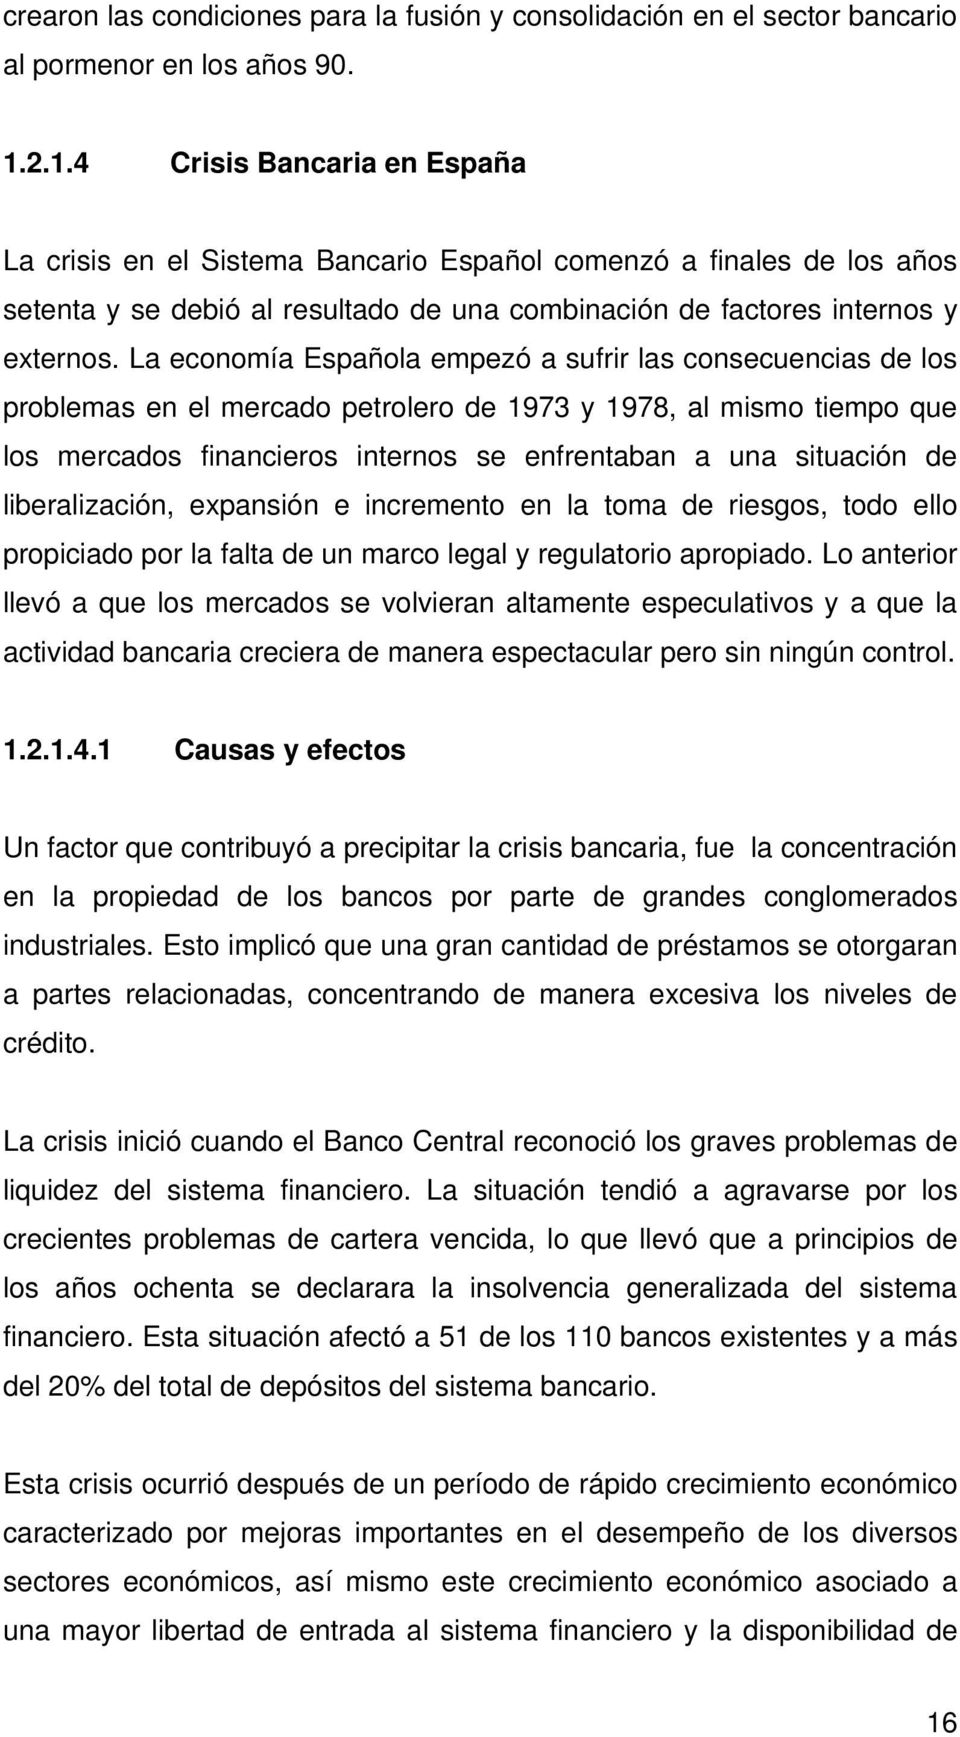 La economía Española empezó a sufrir las consecuencias de los problemas en el mercado petrolero de 1973 y 1978, al mismo tiempo que los mercados financieros internos se enfrentaban a una situación de